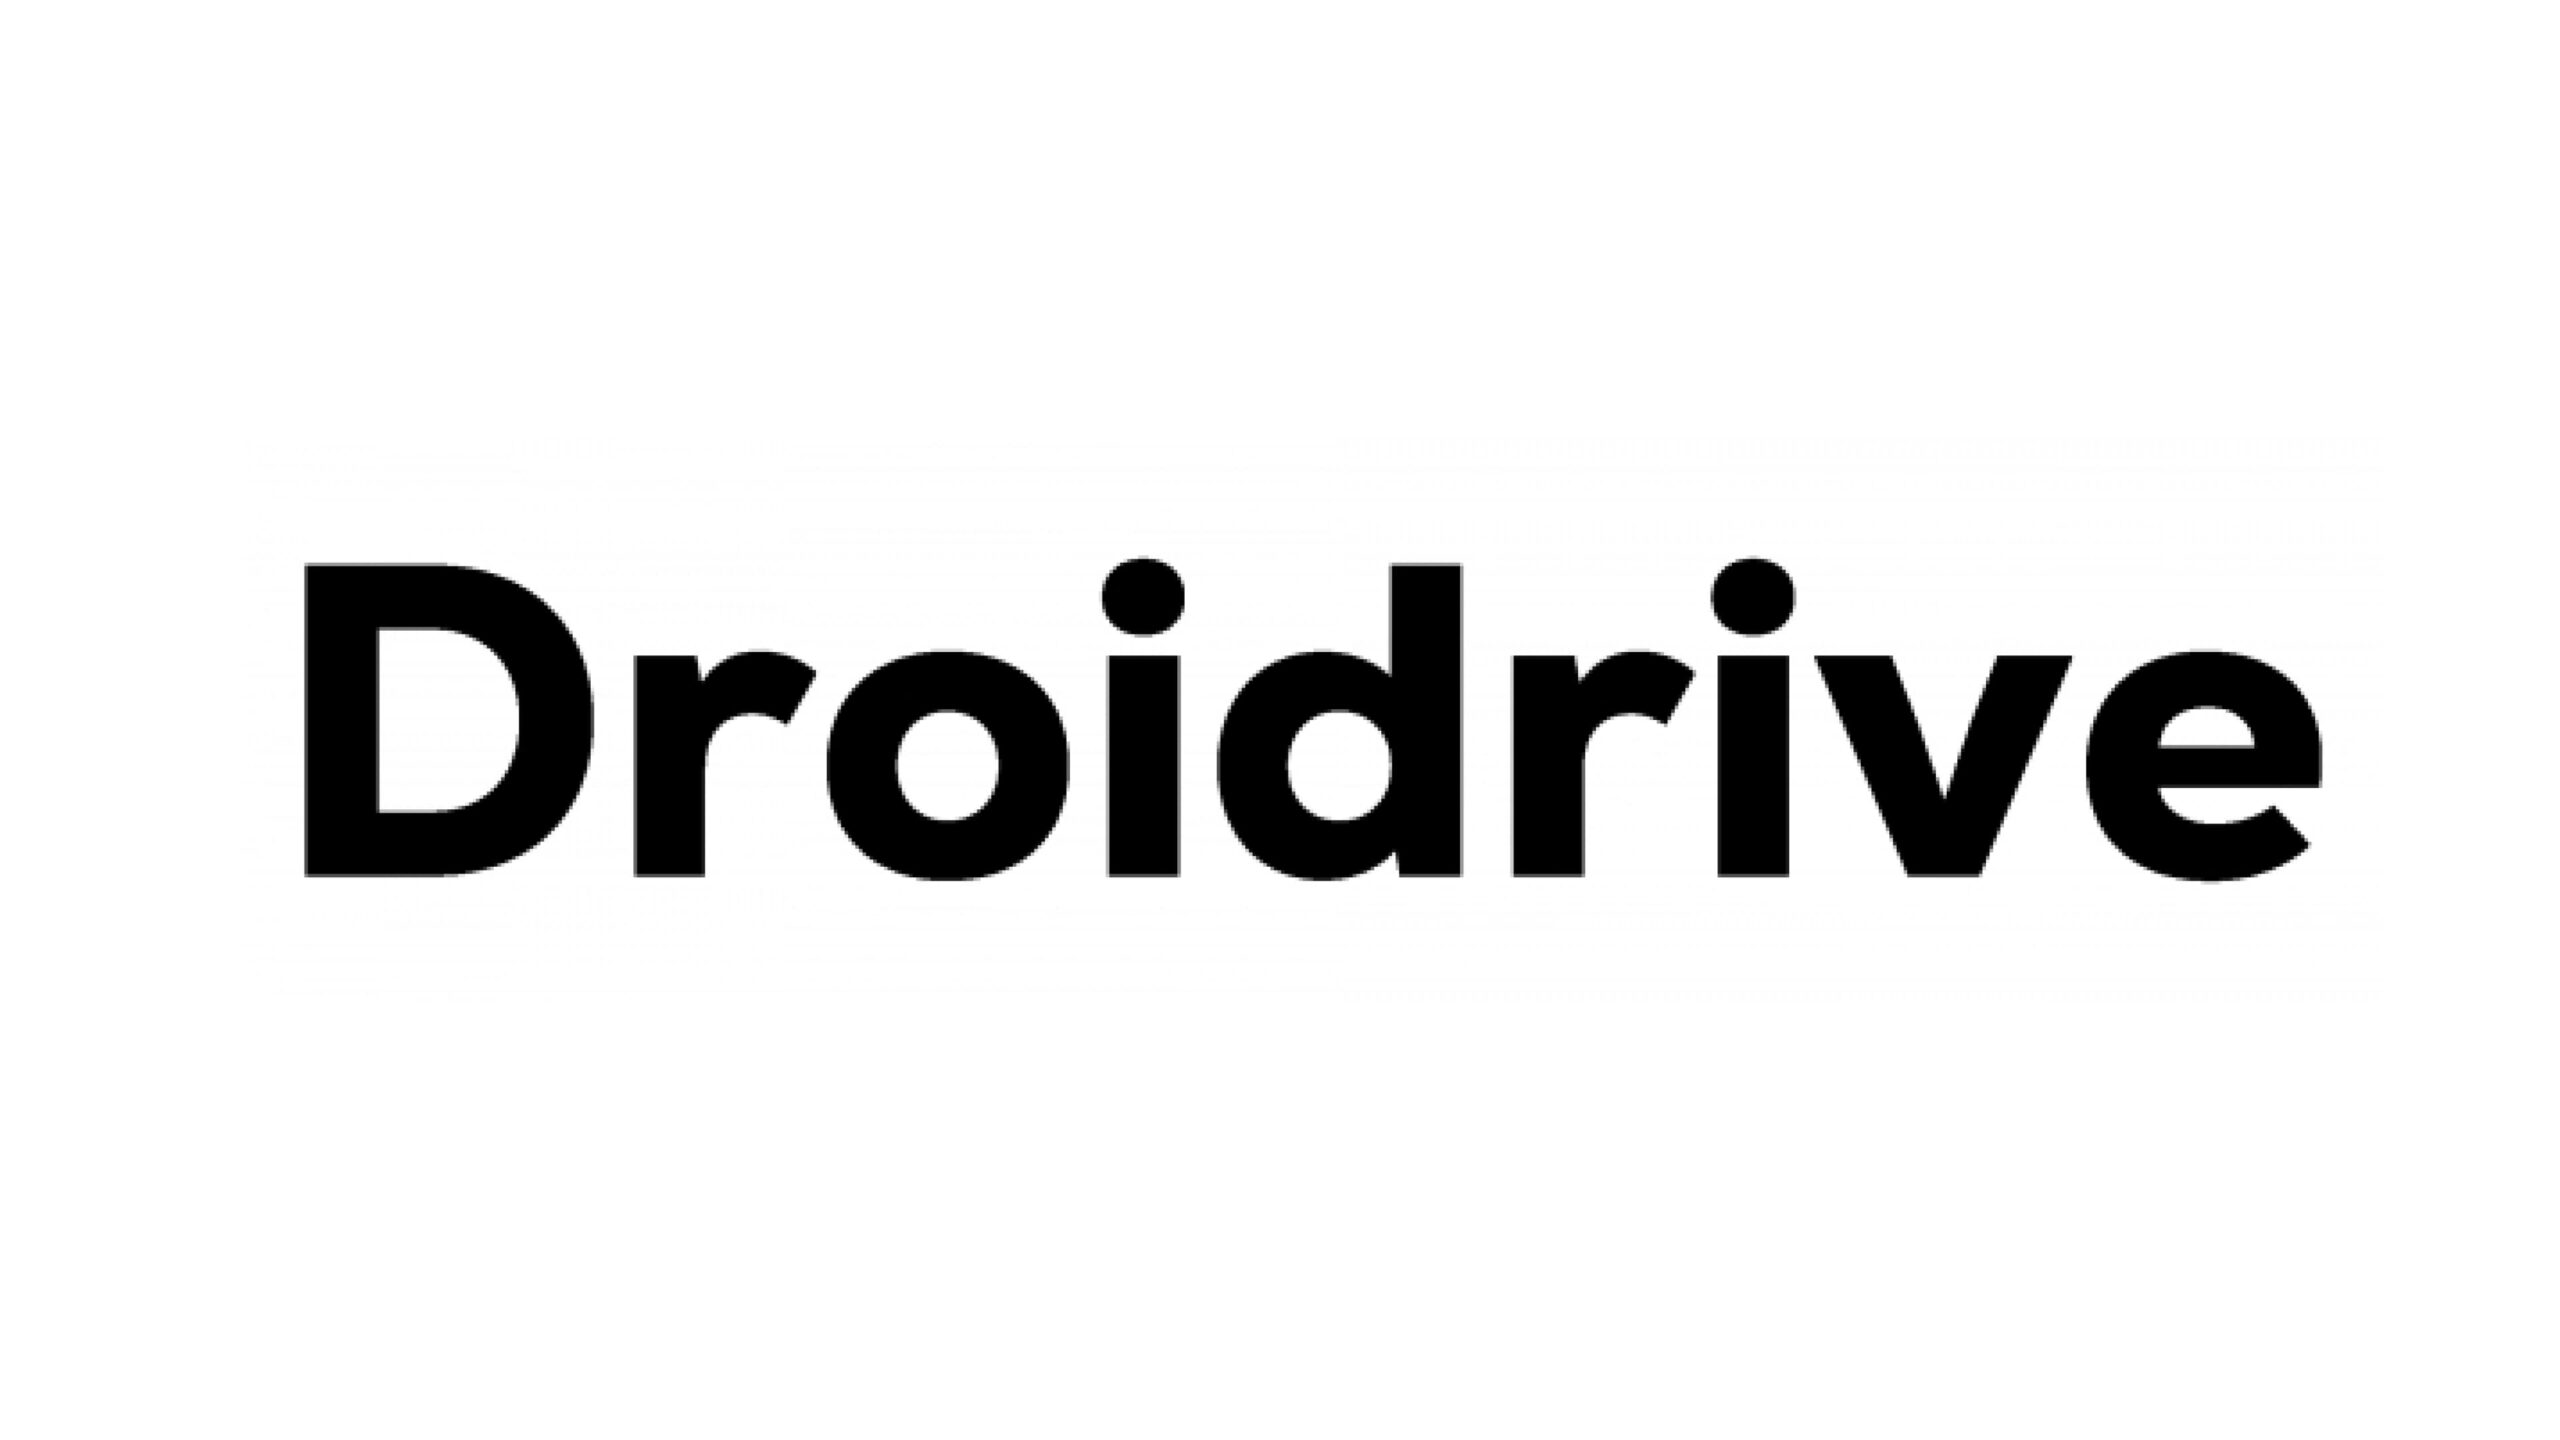 Droidrive Inc.（ドロイドライブ）、シードラウンドにて資金調達を実施